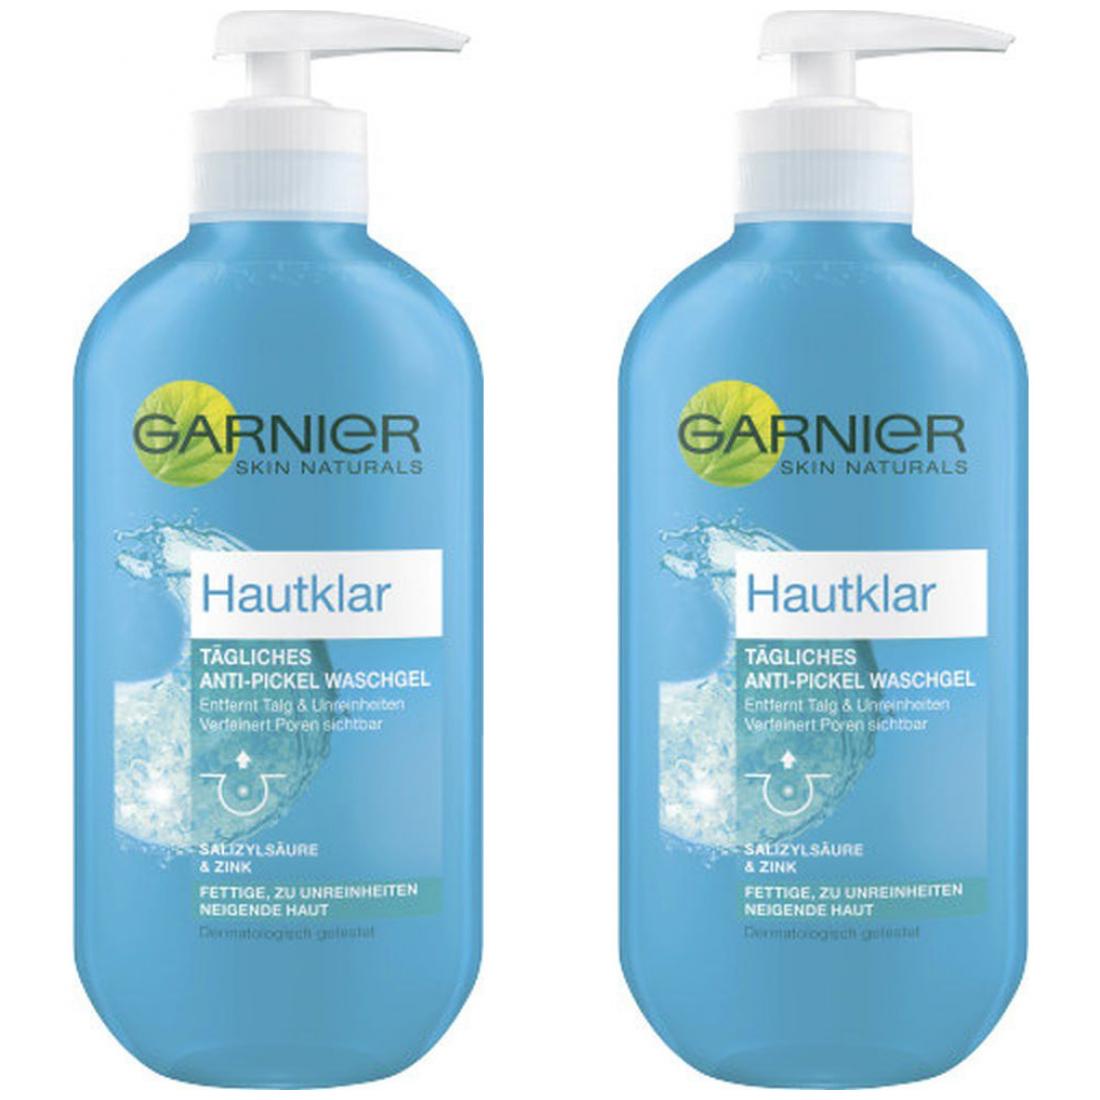 Hautklar Waschgel Active Garnier Haushaltswaren Skin Guru Anti-Pickel Gesicht x 2 200ml